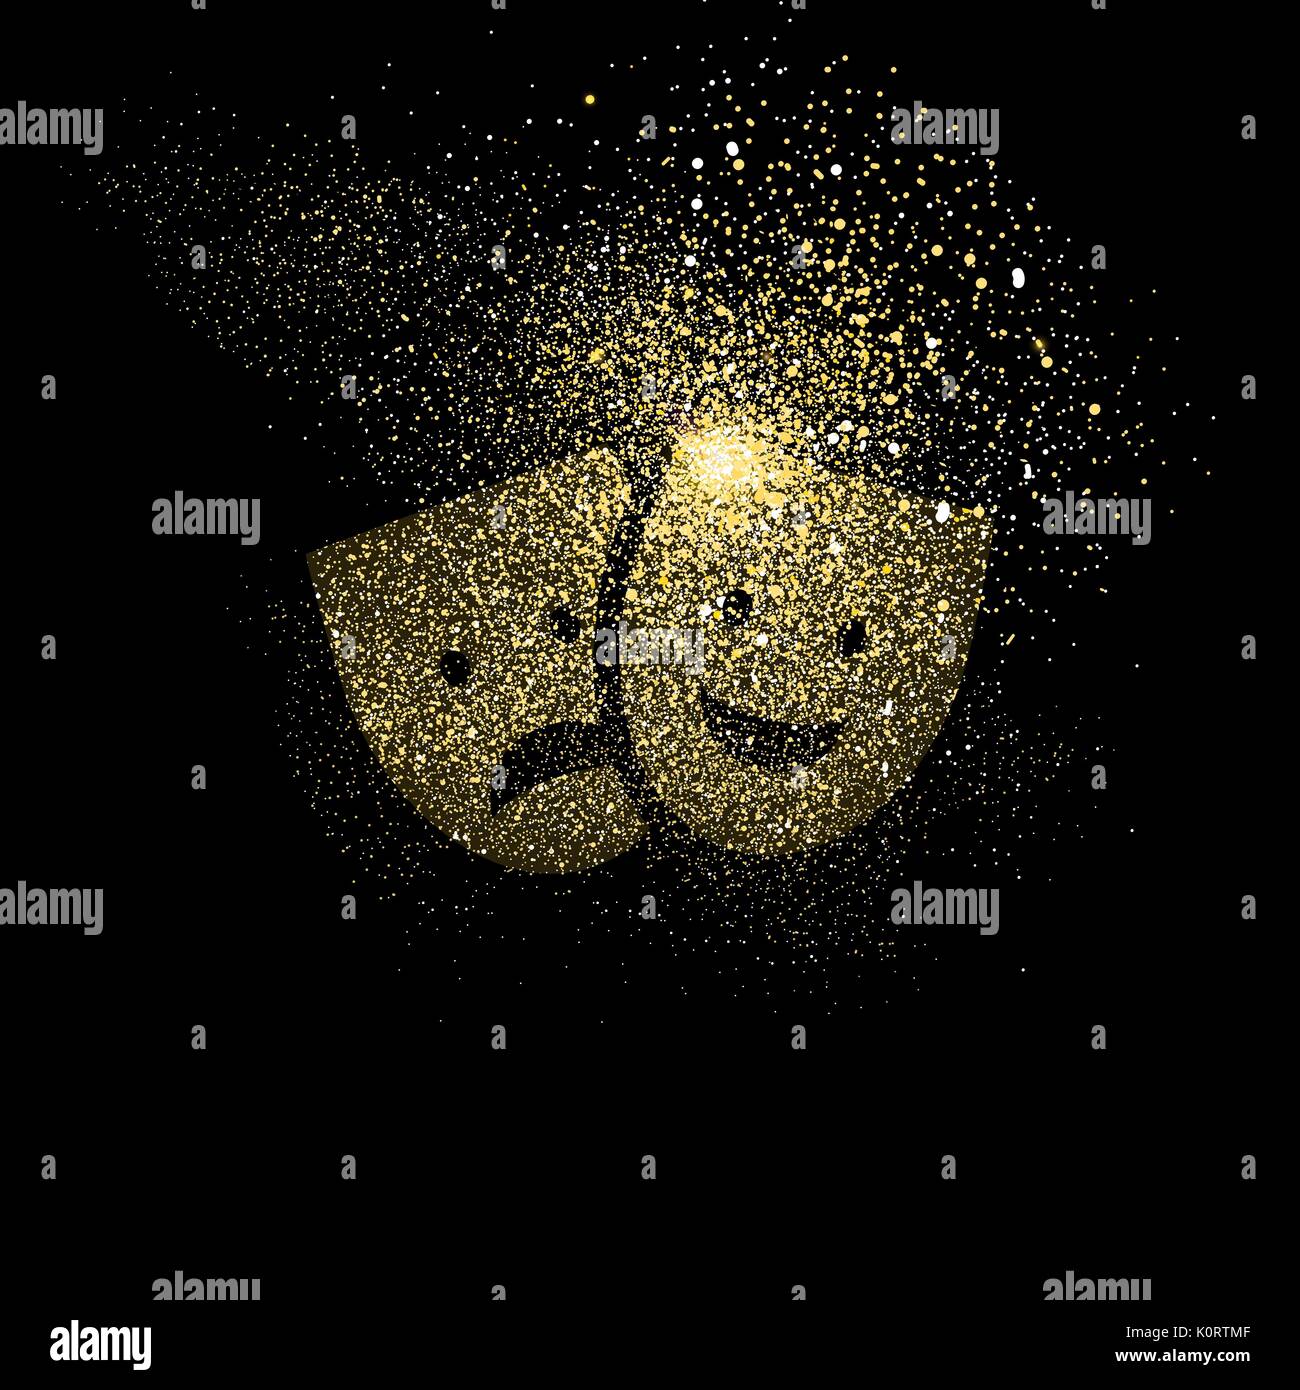 Masque de théâtre concept illustration symbole, icône de divertissement d'or faits de poussière glitter golden réaliste sur fond noir. Vecteur EPS10. Illustration de Vecteur